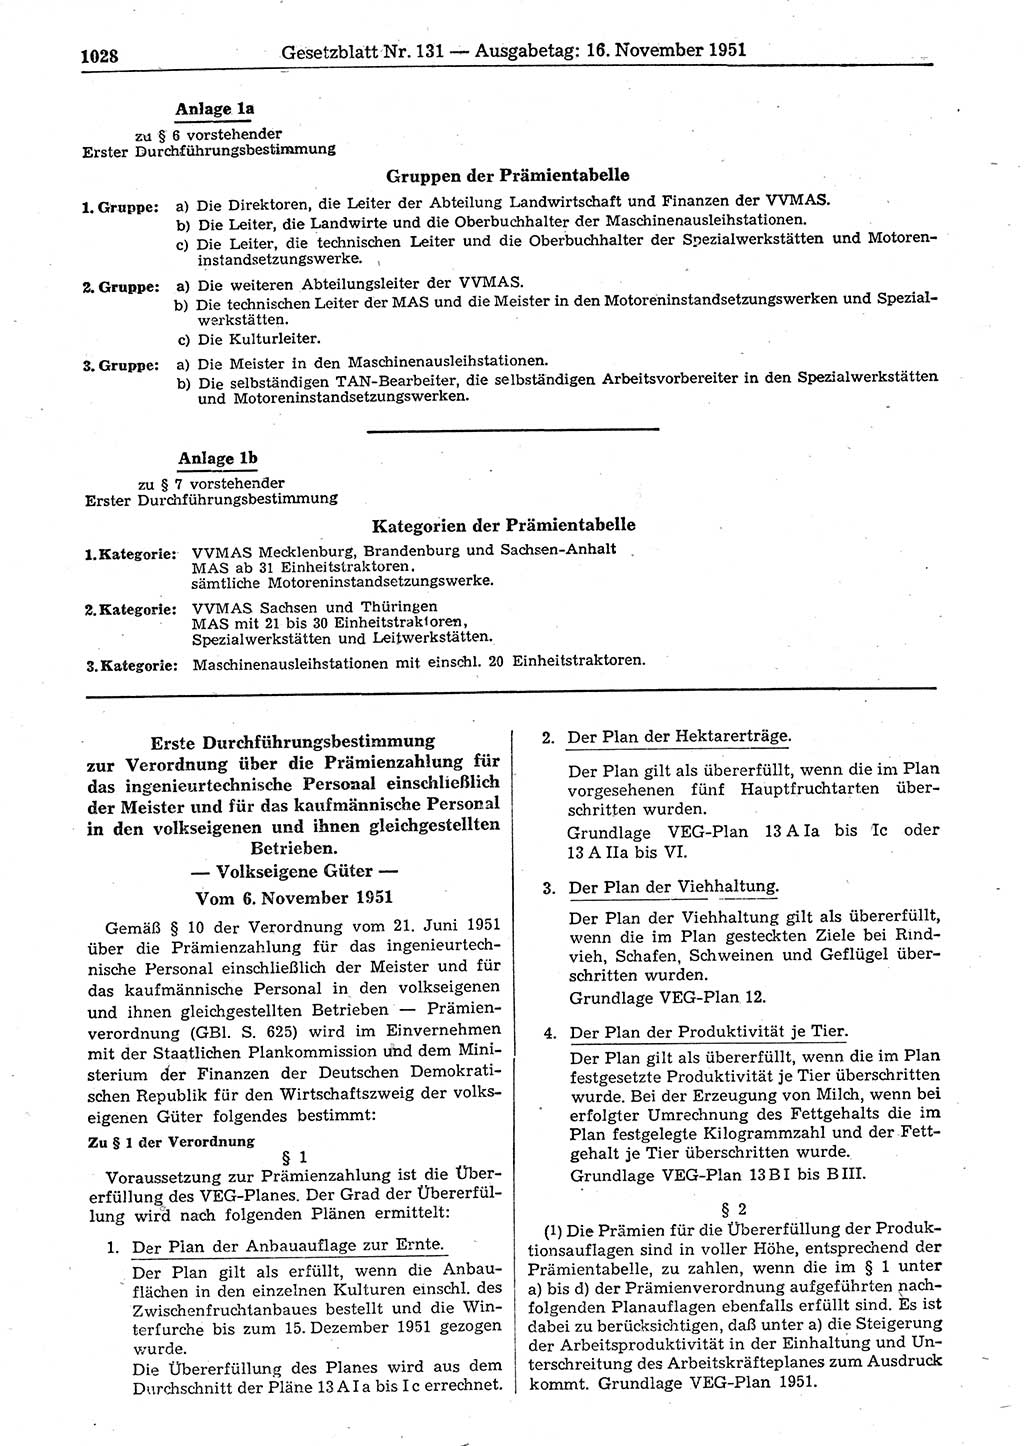 Gesetzblatt (GBl.) der Deutschen Demokratischen Republik (DDR) 1951, Seite 1028 (GBl. DDR 1951, S. 1028)